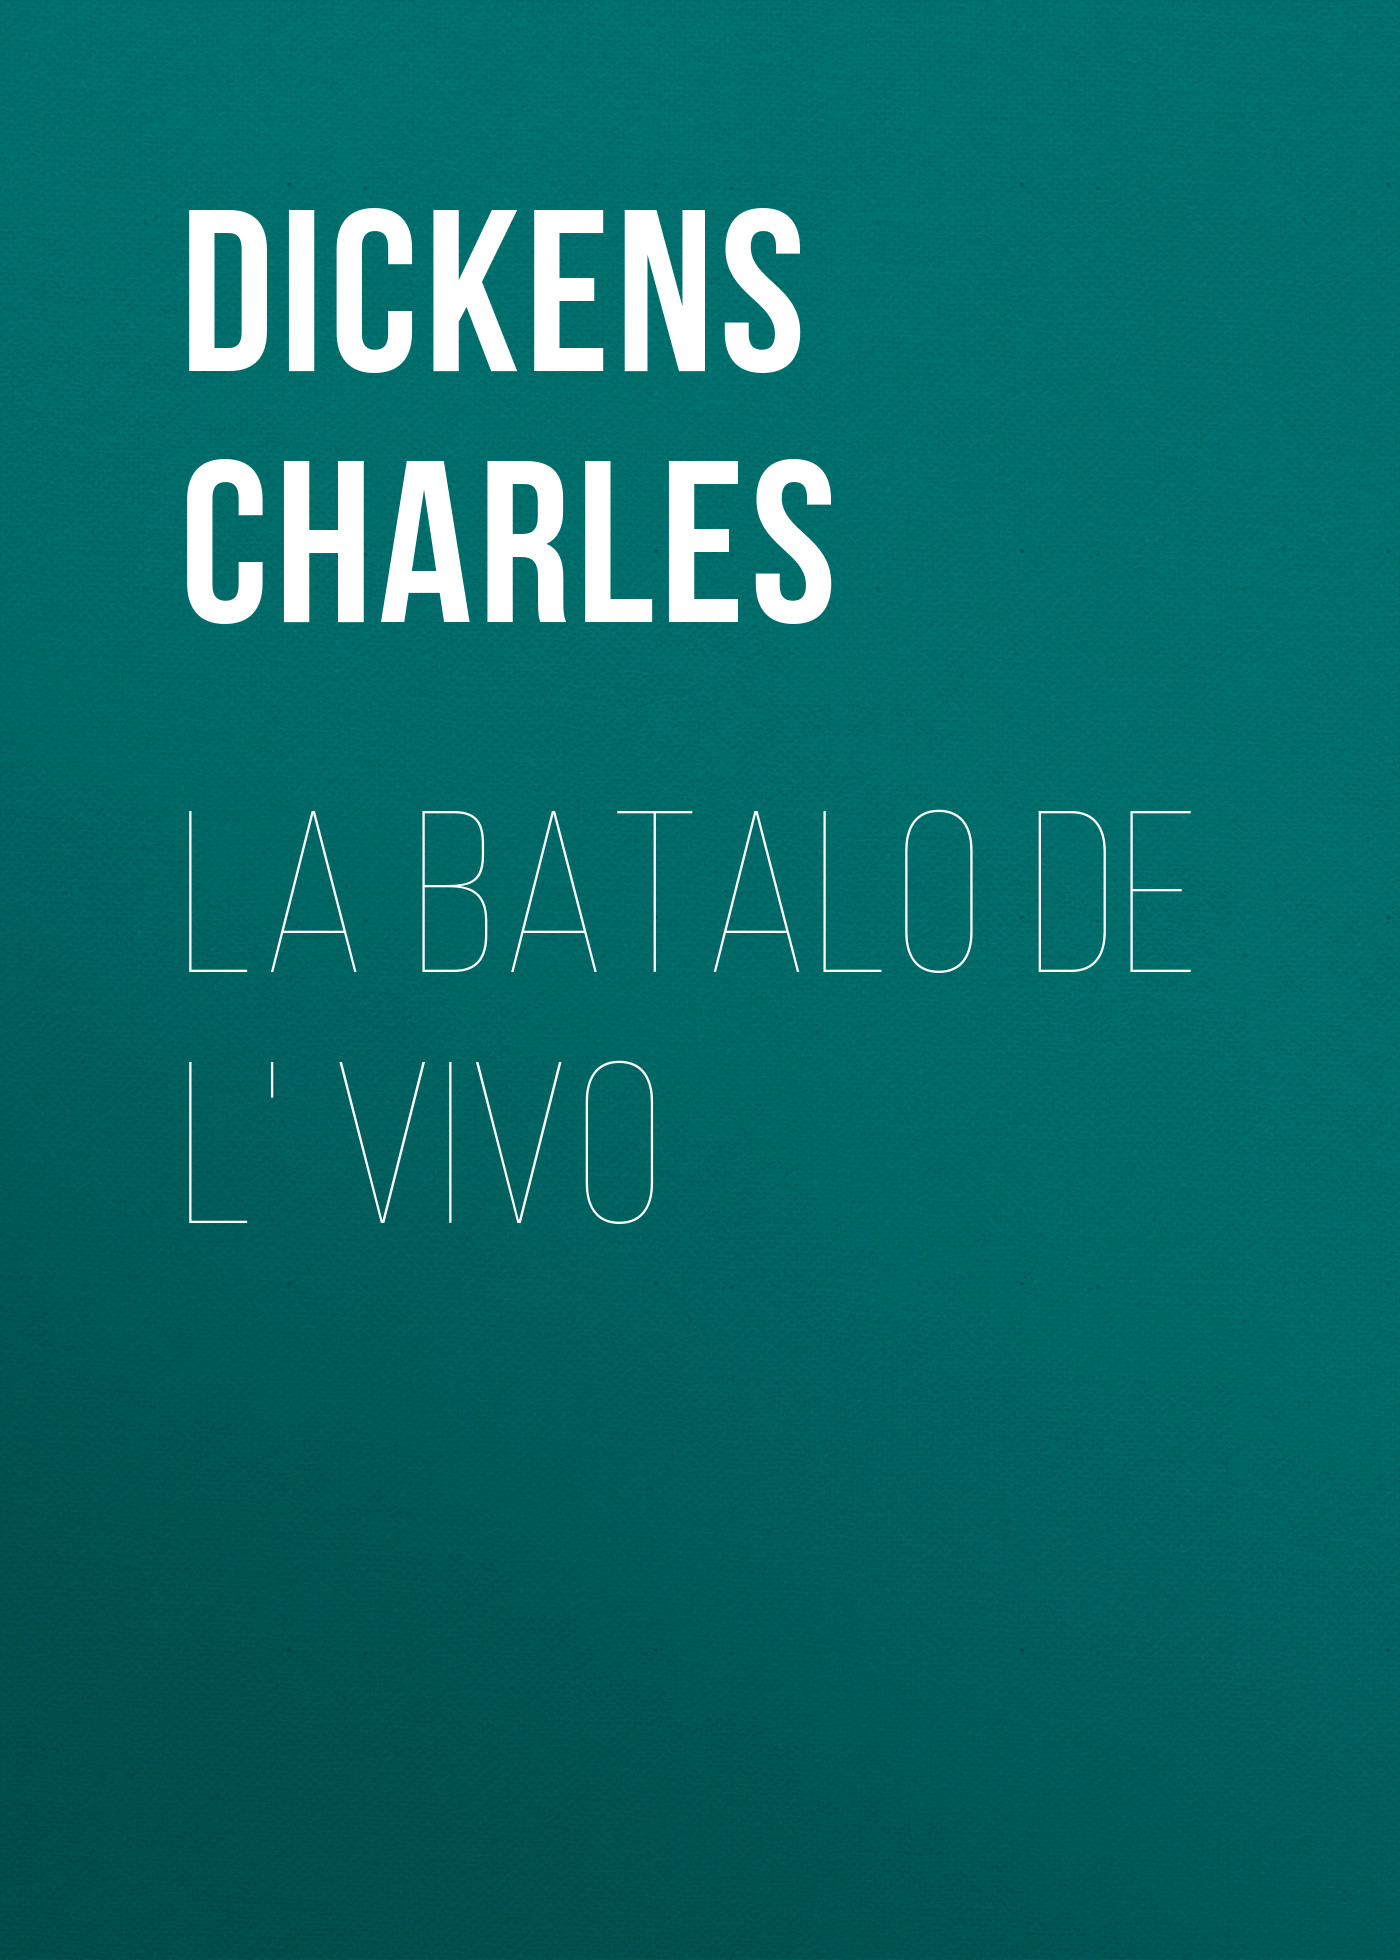 Книга La Batalo de l' Vivo из серии , созданная Charles Dickens, может относится к жанру Зарубежная старинная литература, Зарубежная классика. Стоимость электронной книги La Batalo de l' Vivo с идентификатором 25092084 составляет 0 руб.